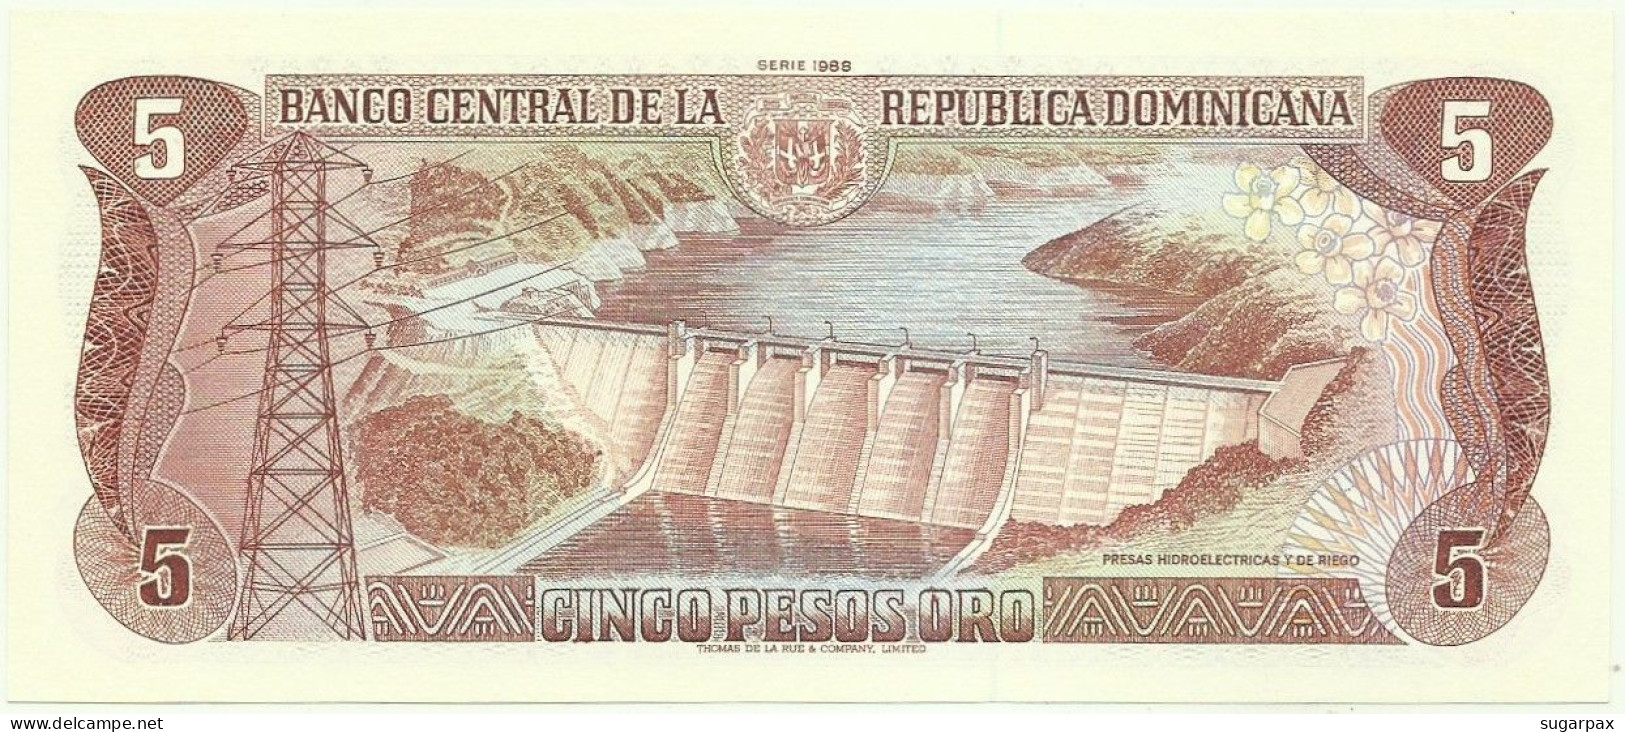 Dominican Republic - 5 Pesos Oro - 1988 - P 118.c - Unc. - Repubblica Dominicana